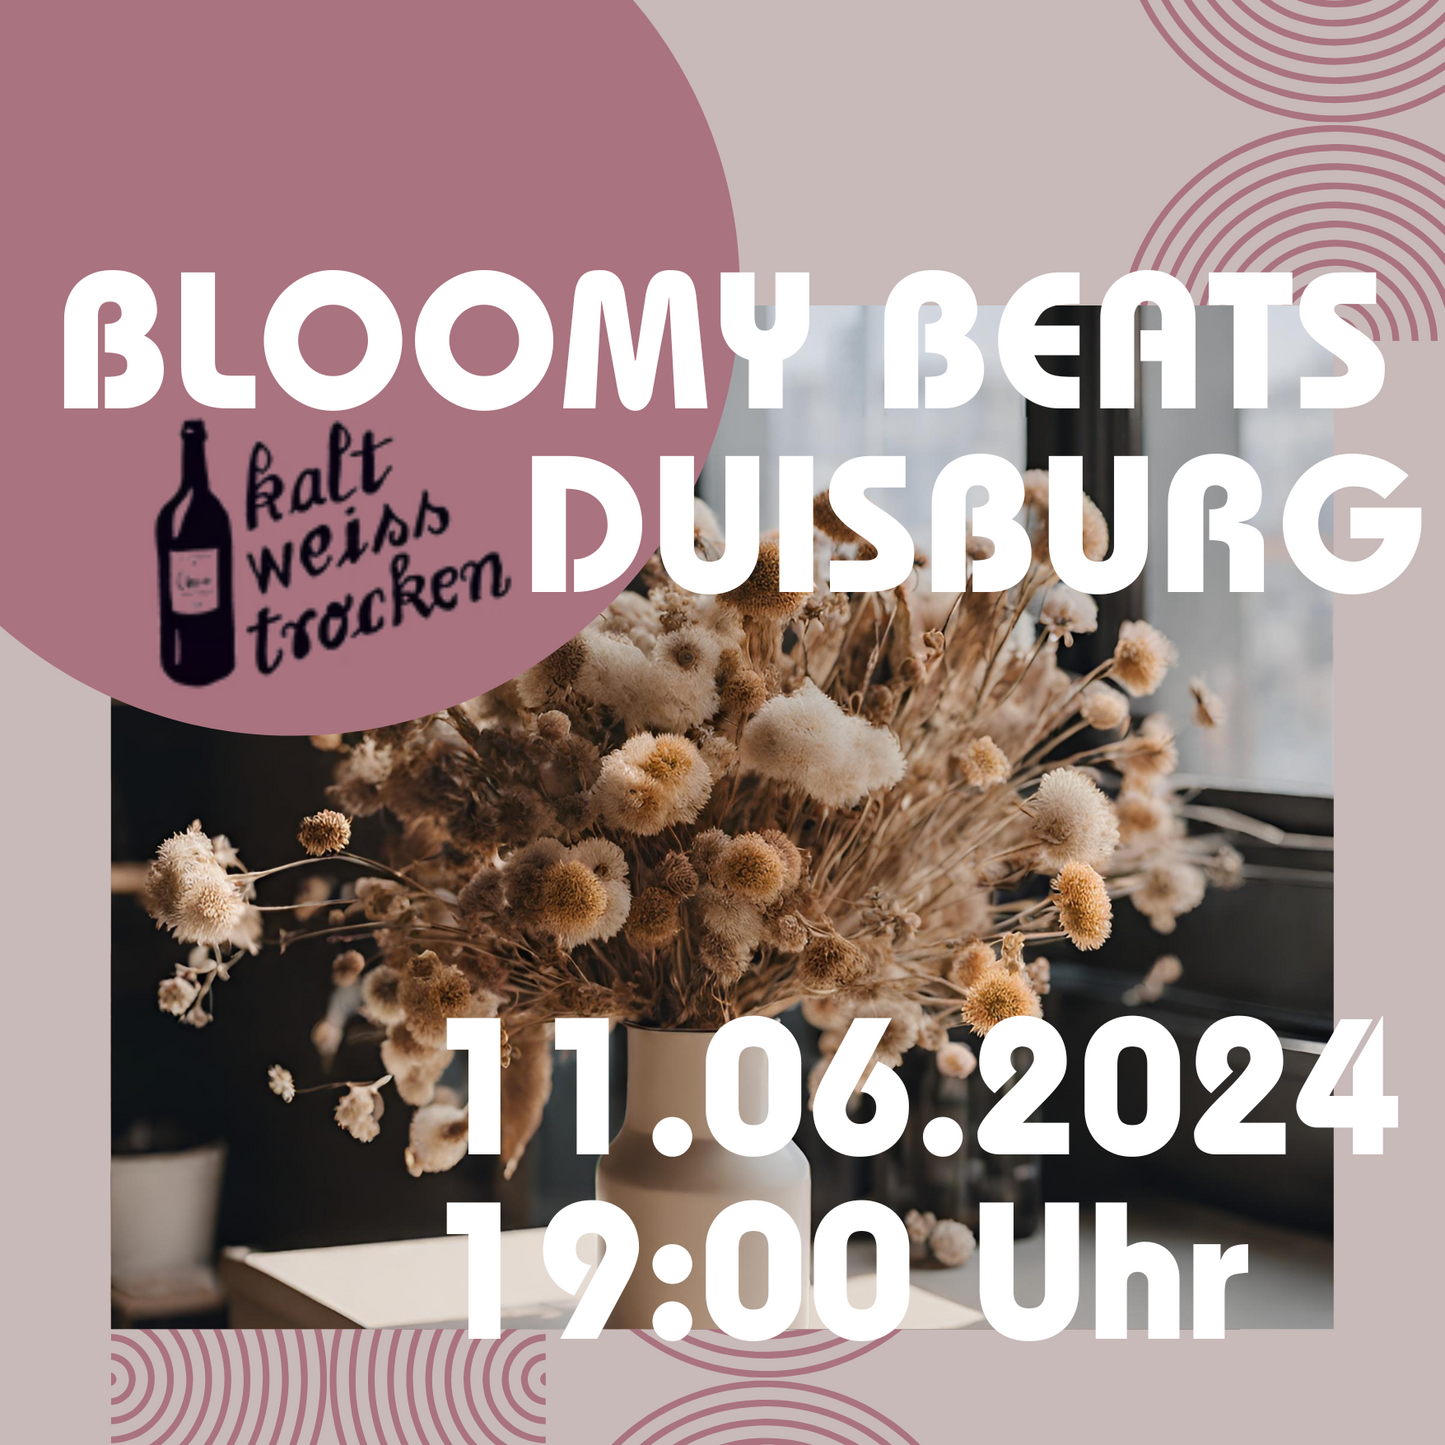 BLOOMY BEATS - Trockenblumenbouquet Workshop kalt.weiss.trocken. Duisburg 11.06.2024 19 Uhr